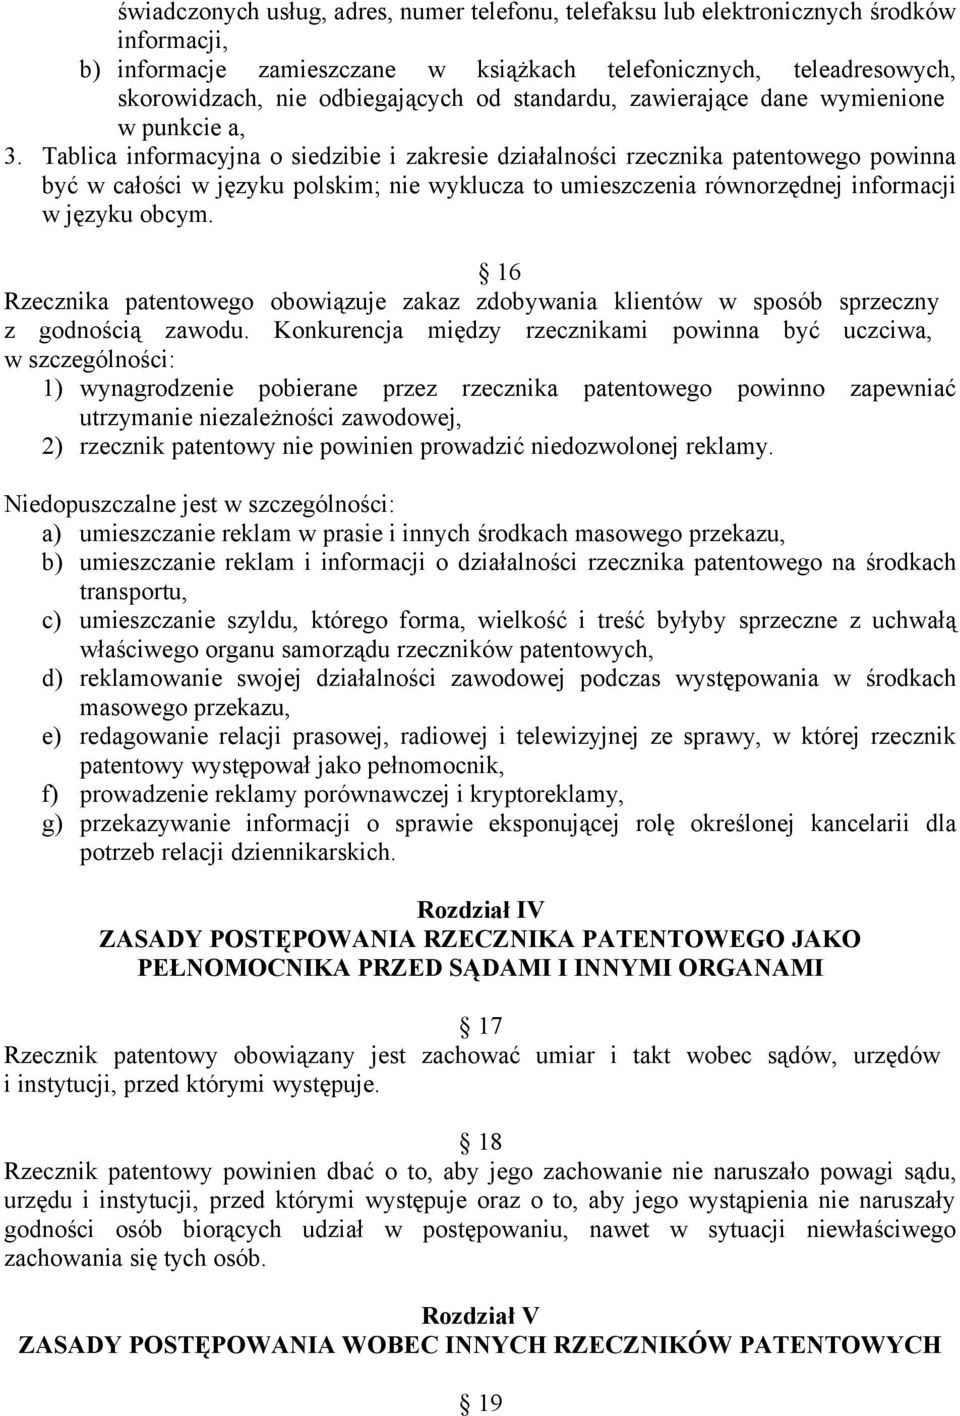 Tablica informacyjna o siedzibie i zakresie działalności rzecznika patentowego powinna być w całości w języku polskim; nie wyklucza to umieszczenia równorzędnej informacji w języku obcym.